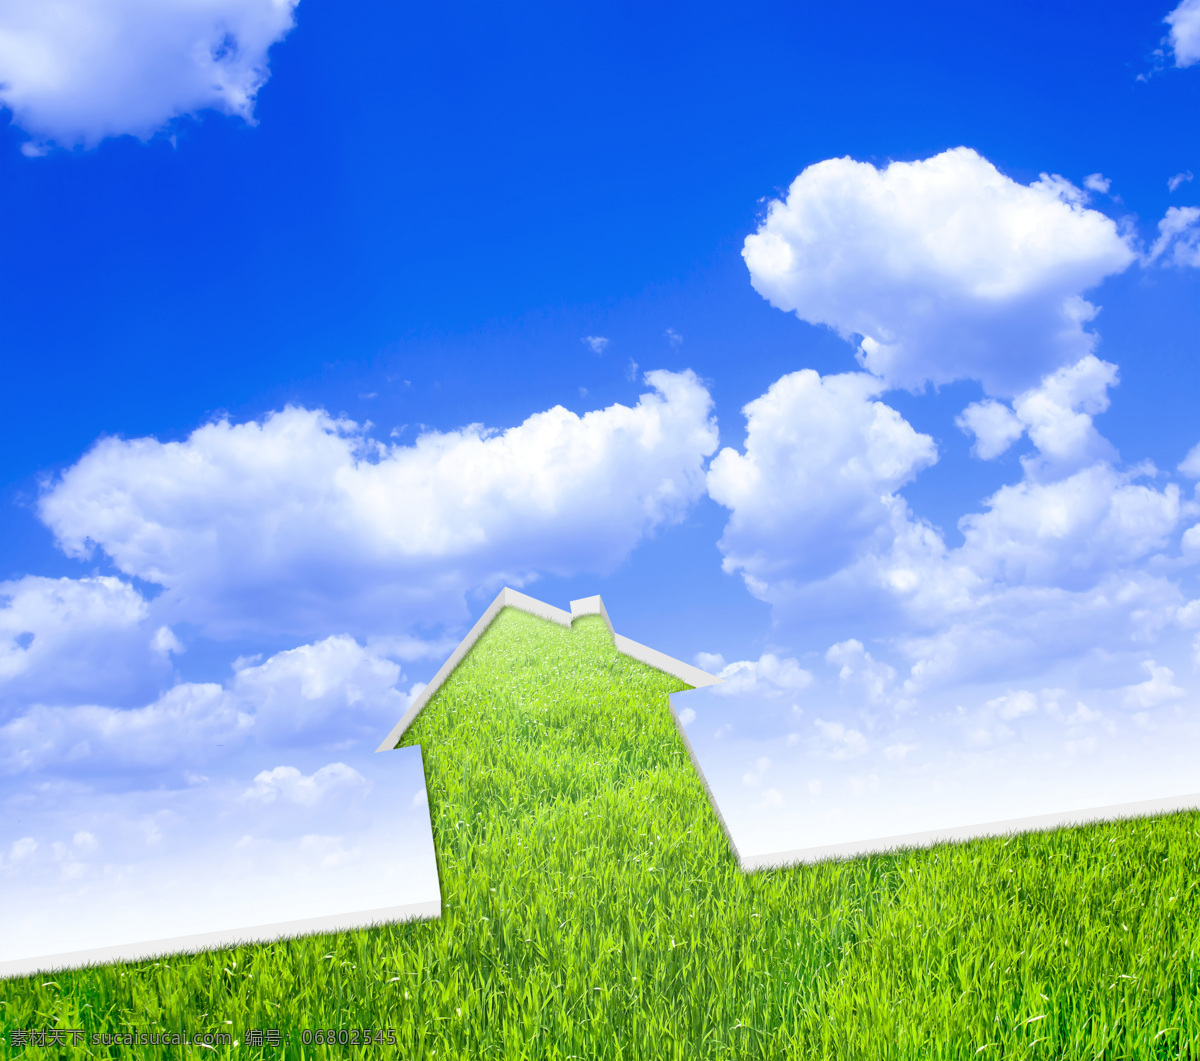 生态 自然 环境 绿色 草地 蓝天 环境保护 绿色房屋 山水风景 风景图片